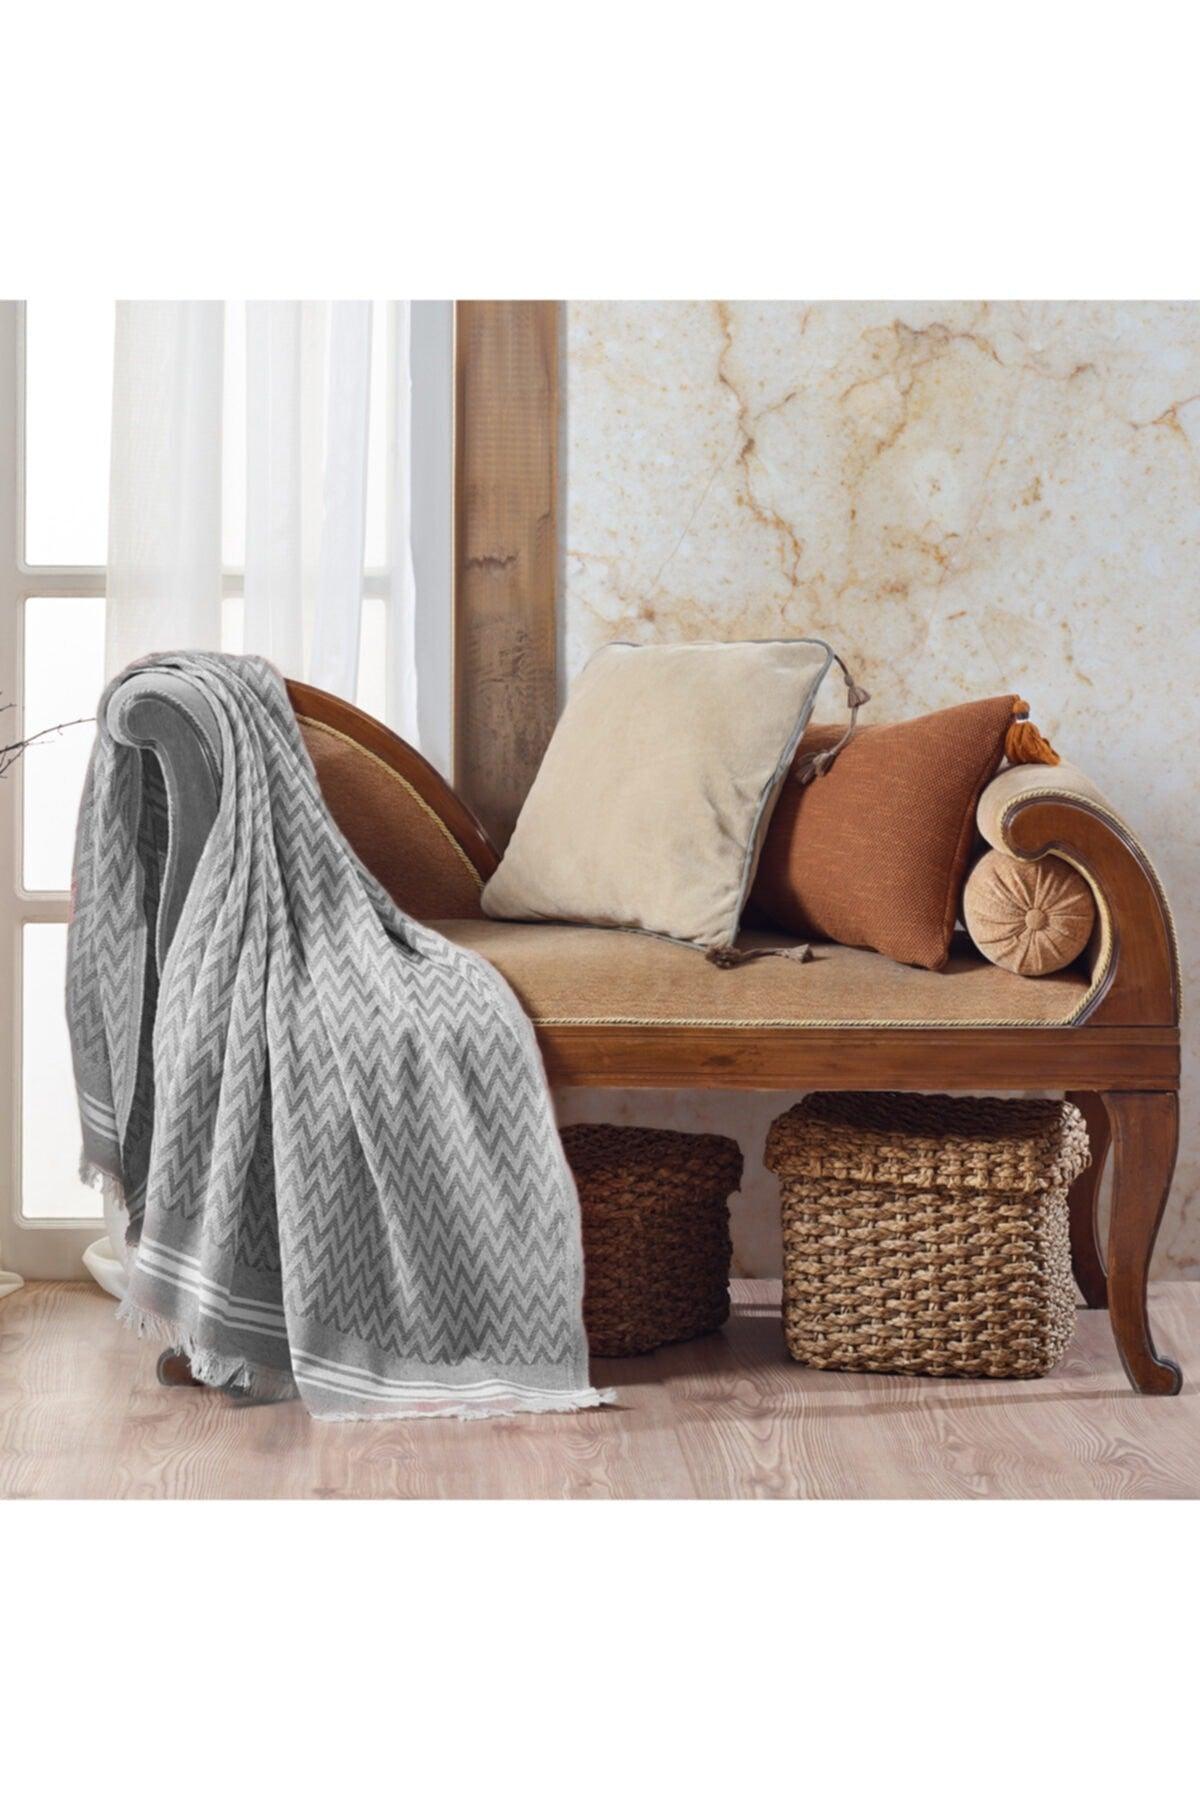 Zigzag Cotton Tv Blanket | Knee Blanket Throw - Dark Gray - Swordslife